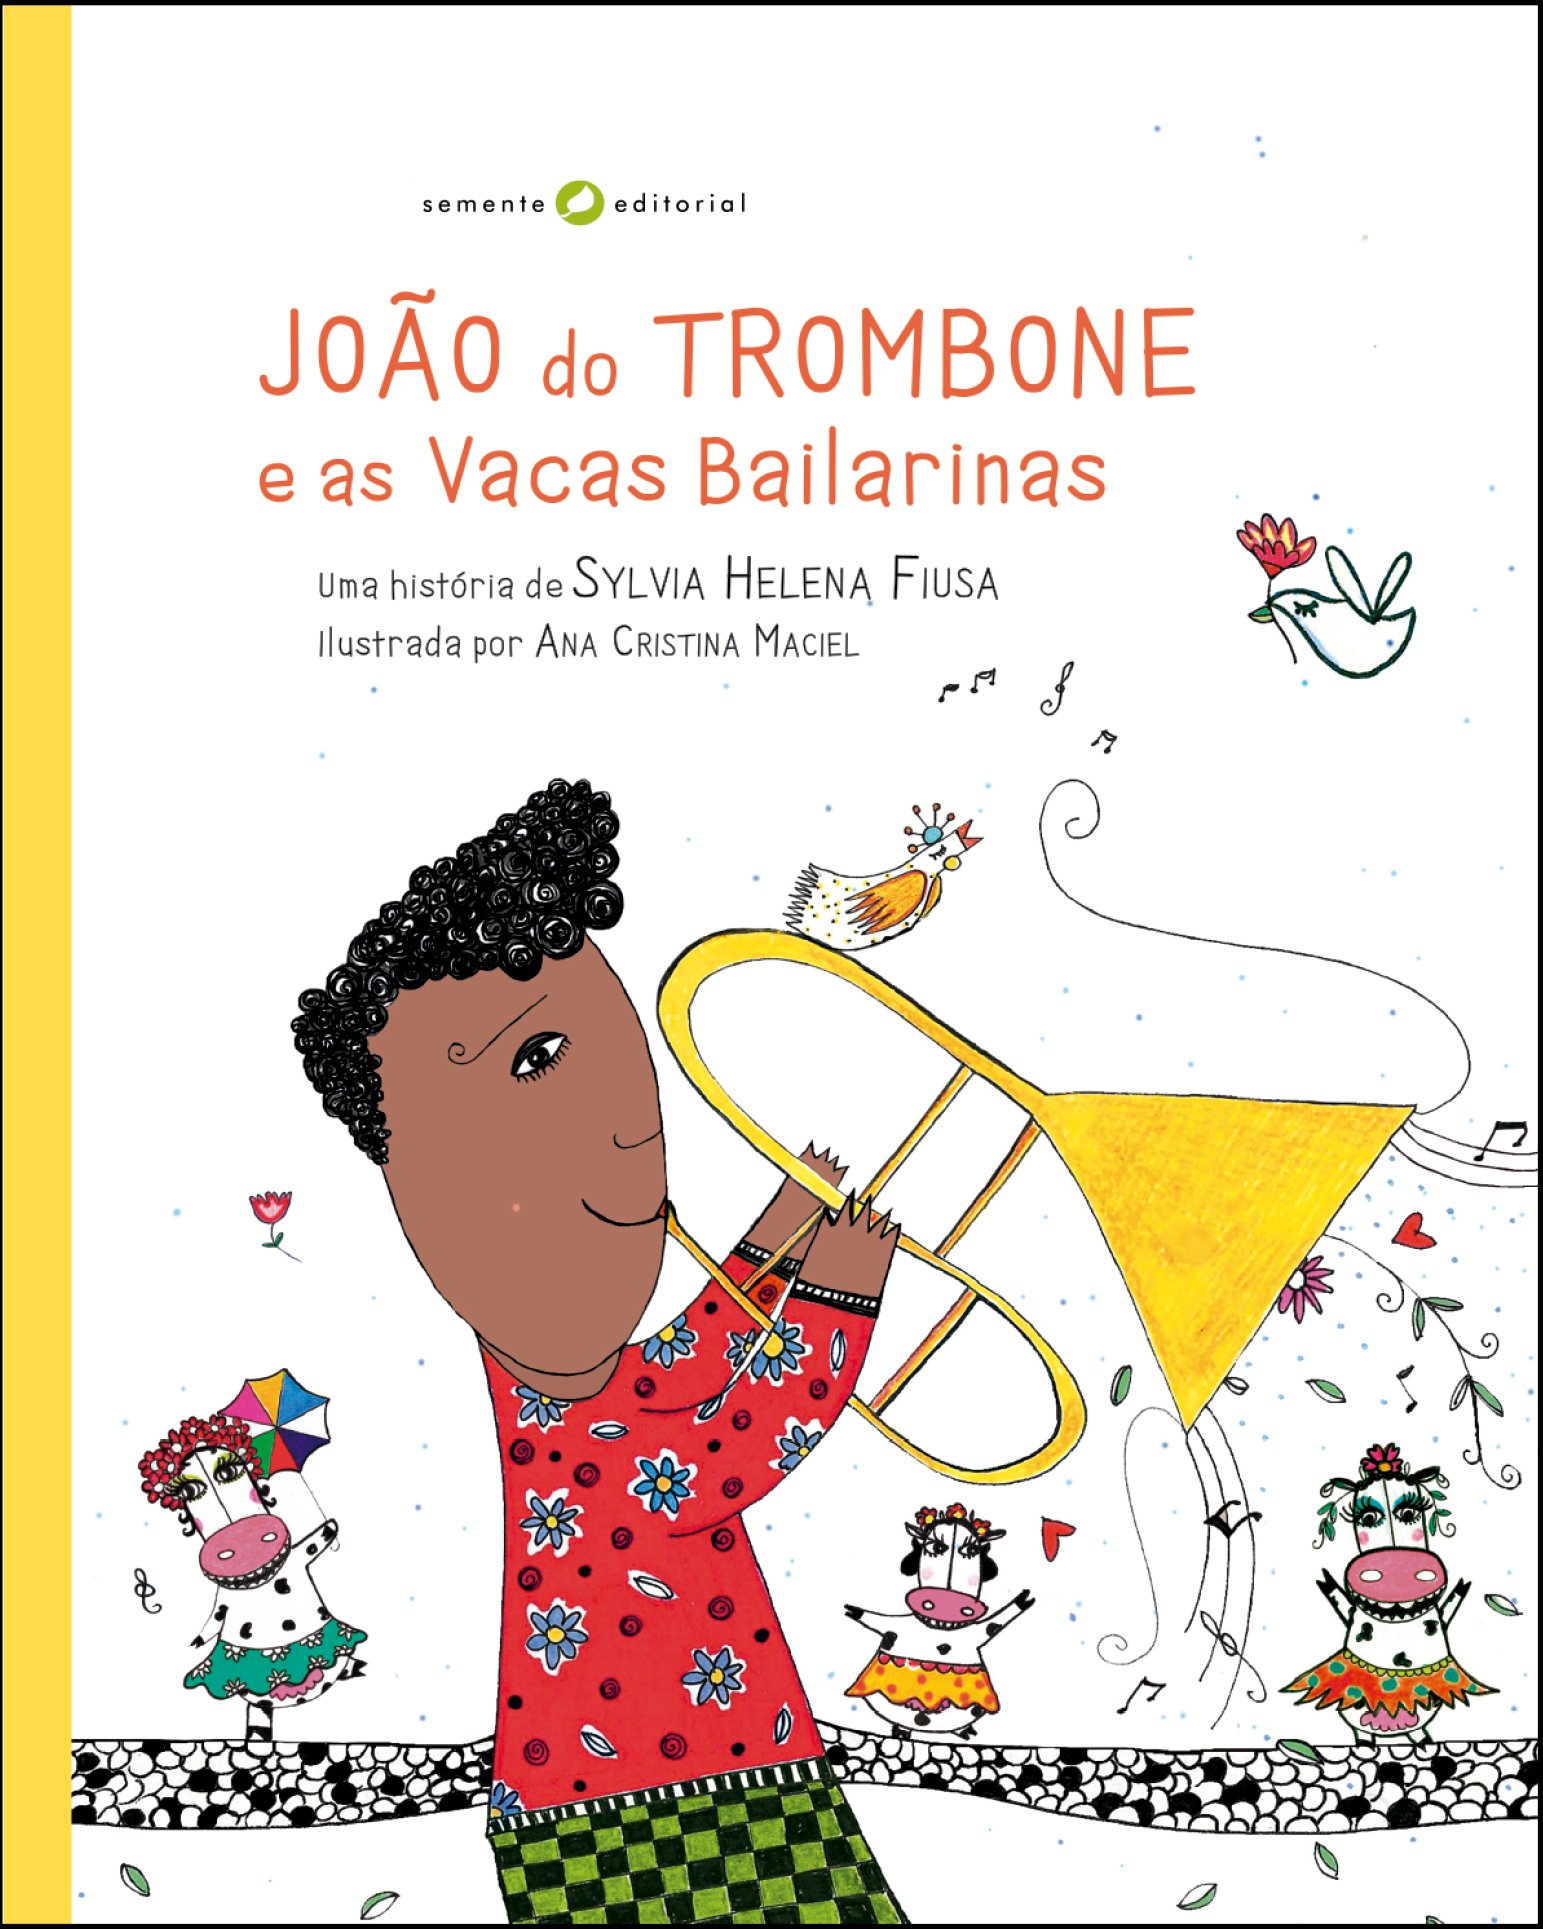 João do Trombone e as Vacas Bailarinas